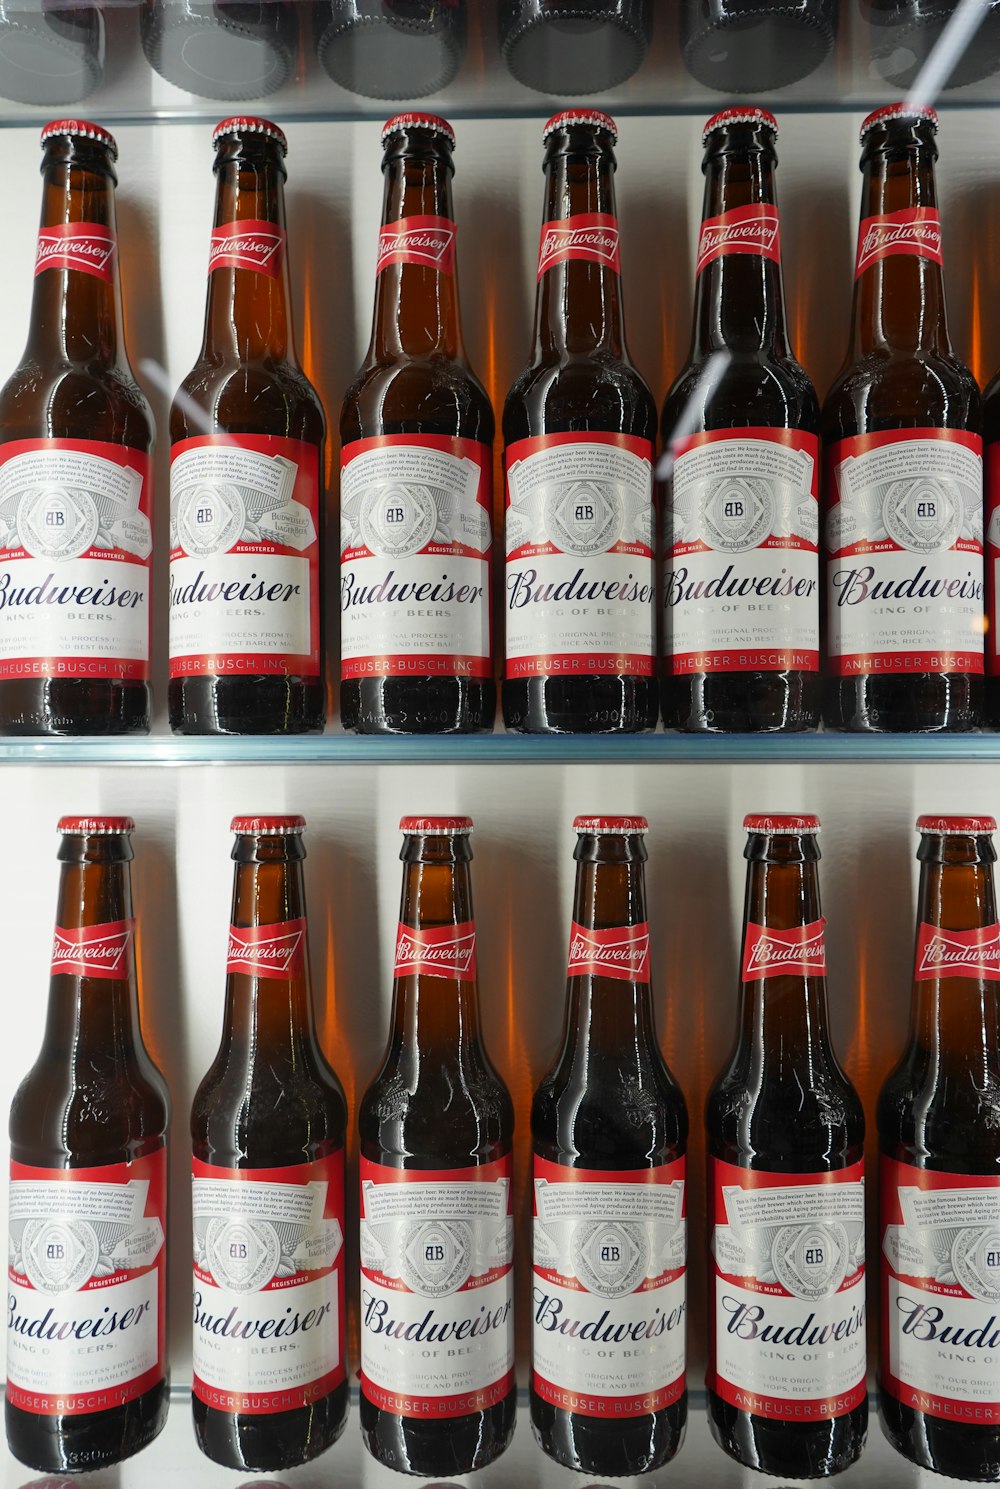 shelves of Budweiser beer bottle